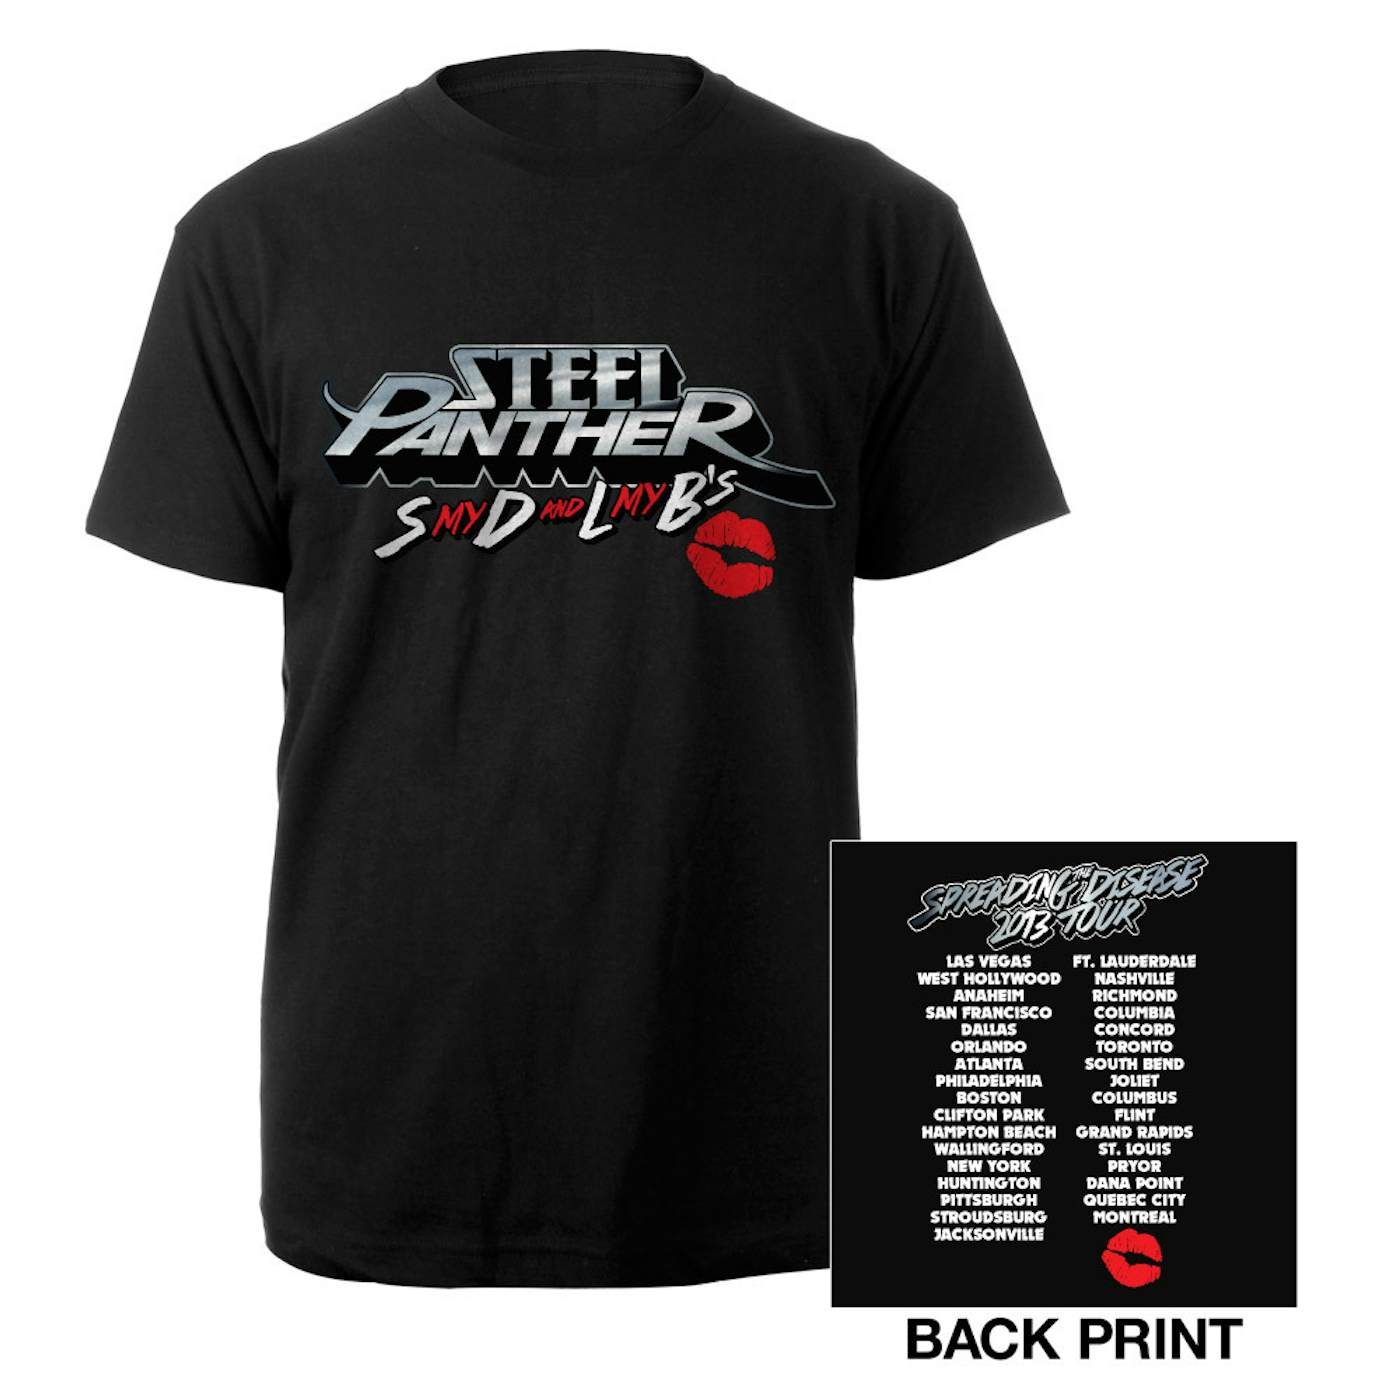 Steel Panther SDLB's Tour 2013 Shirt